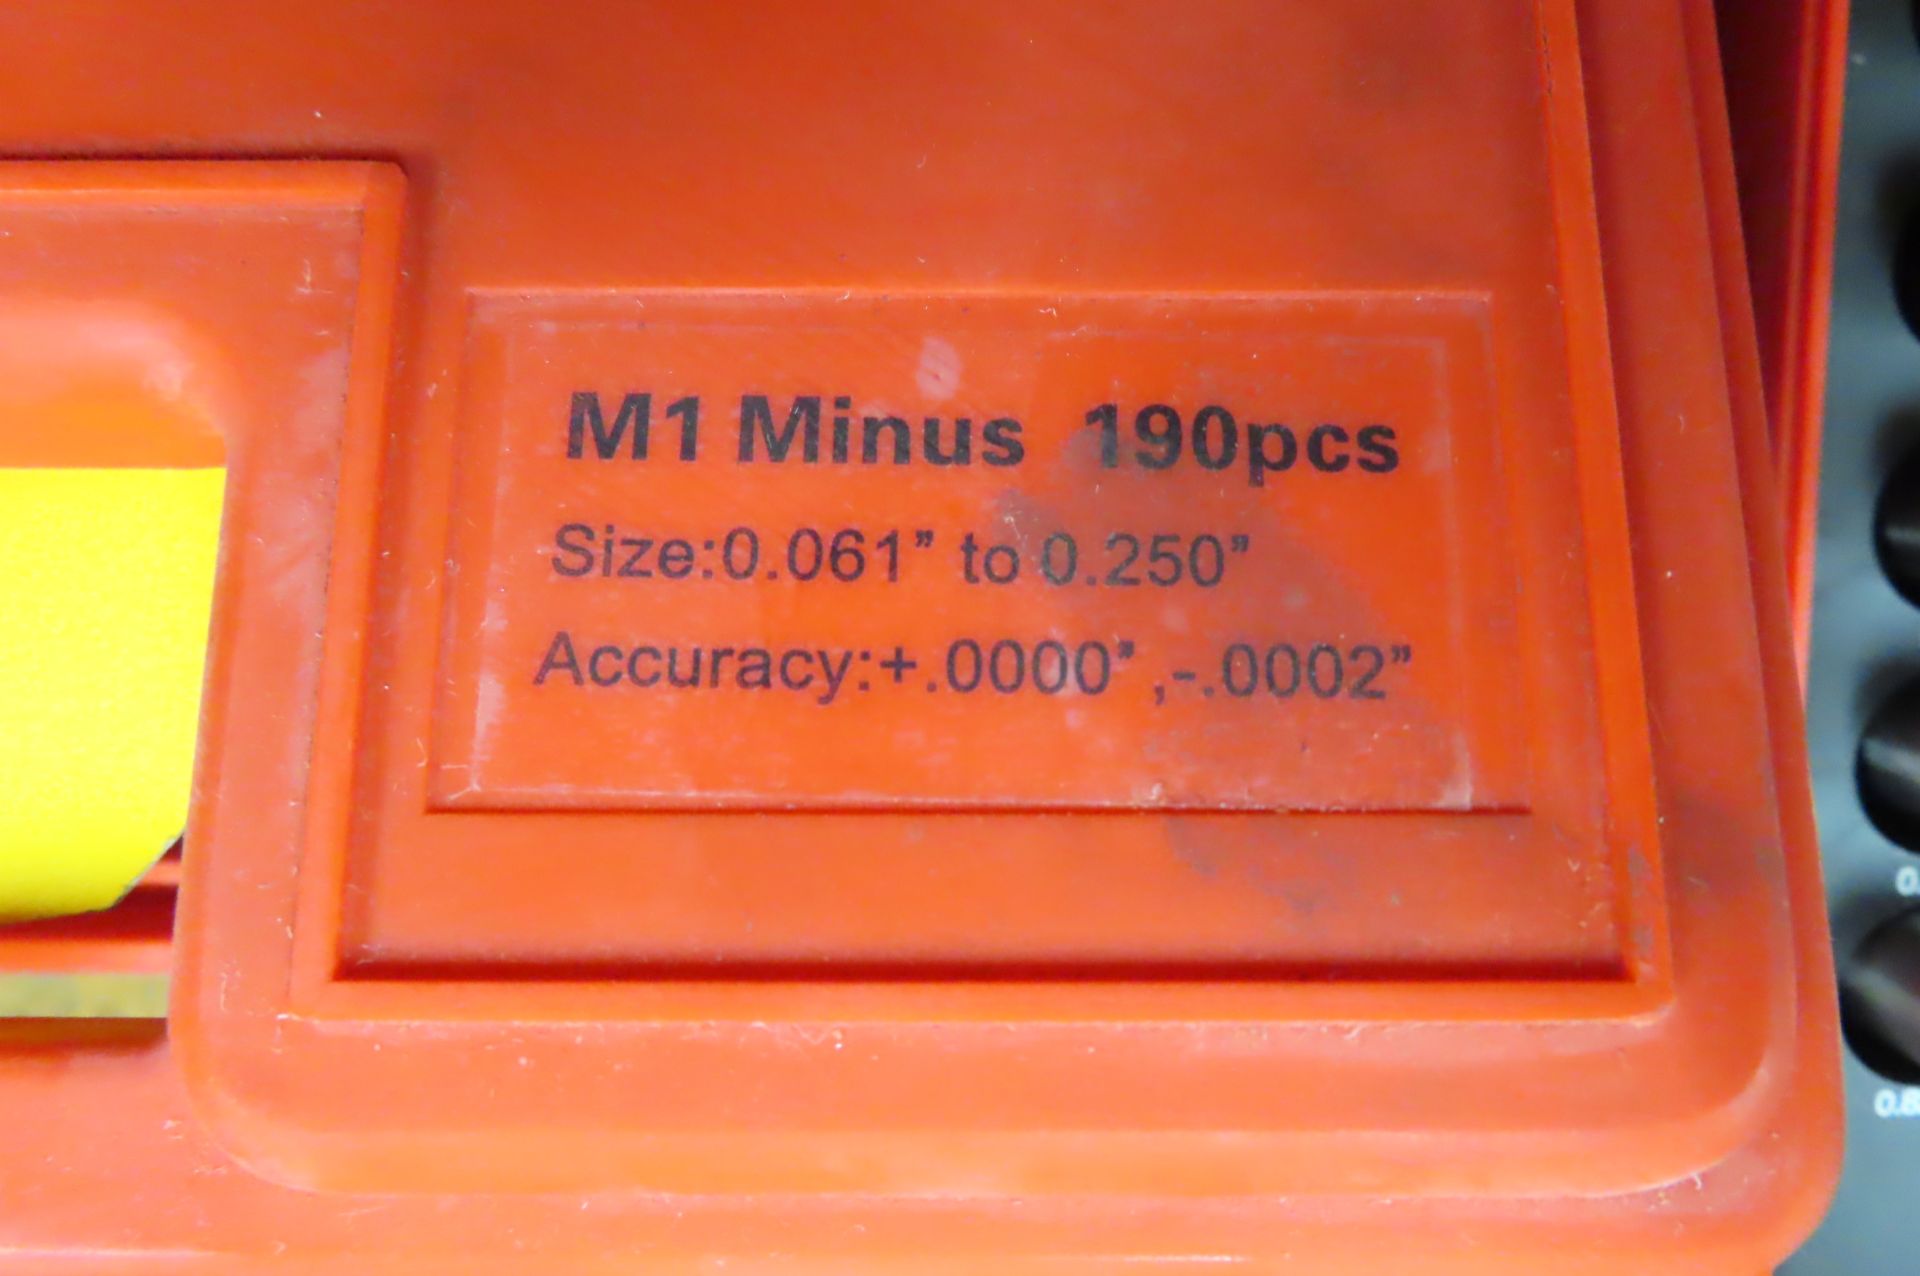 M1 MINUS PIN GAGE SET, 0.061 - 0.250 IN. - Image 3 of 3